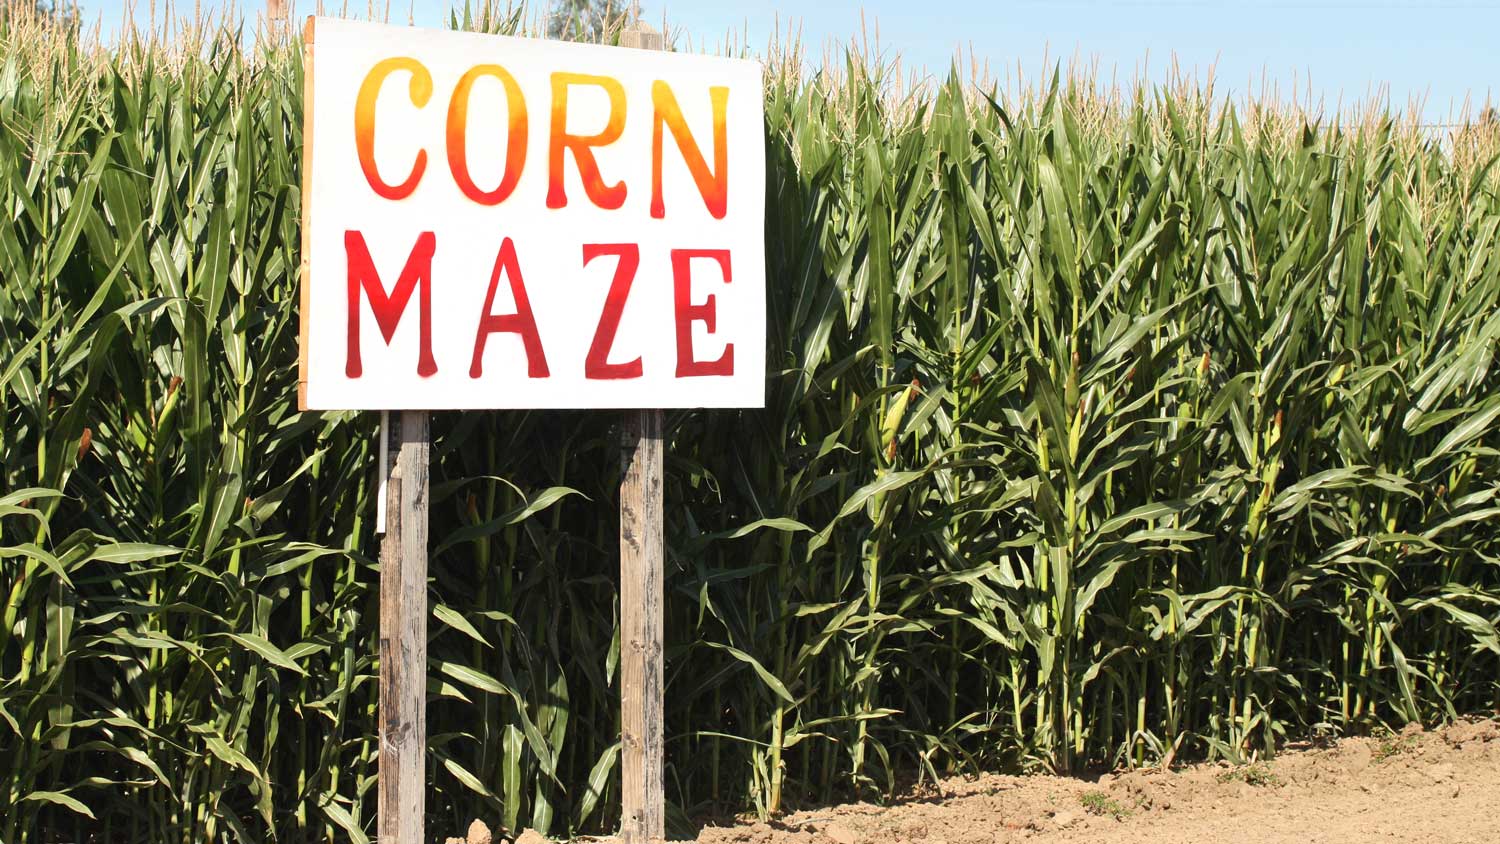 Corn maze entrance.